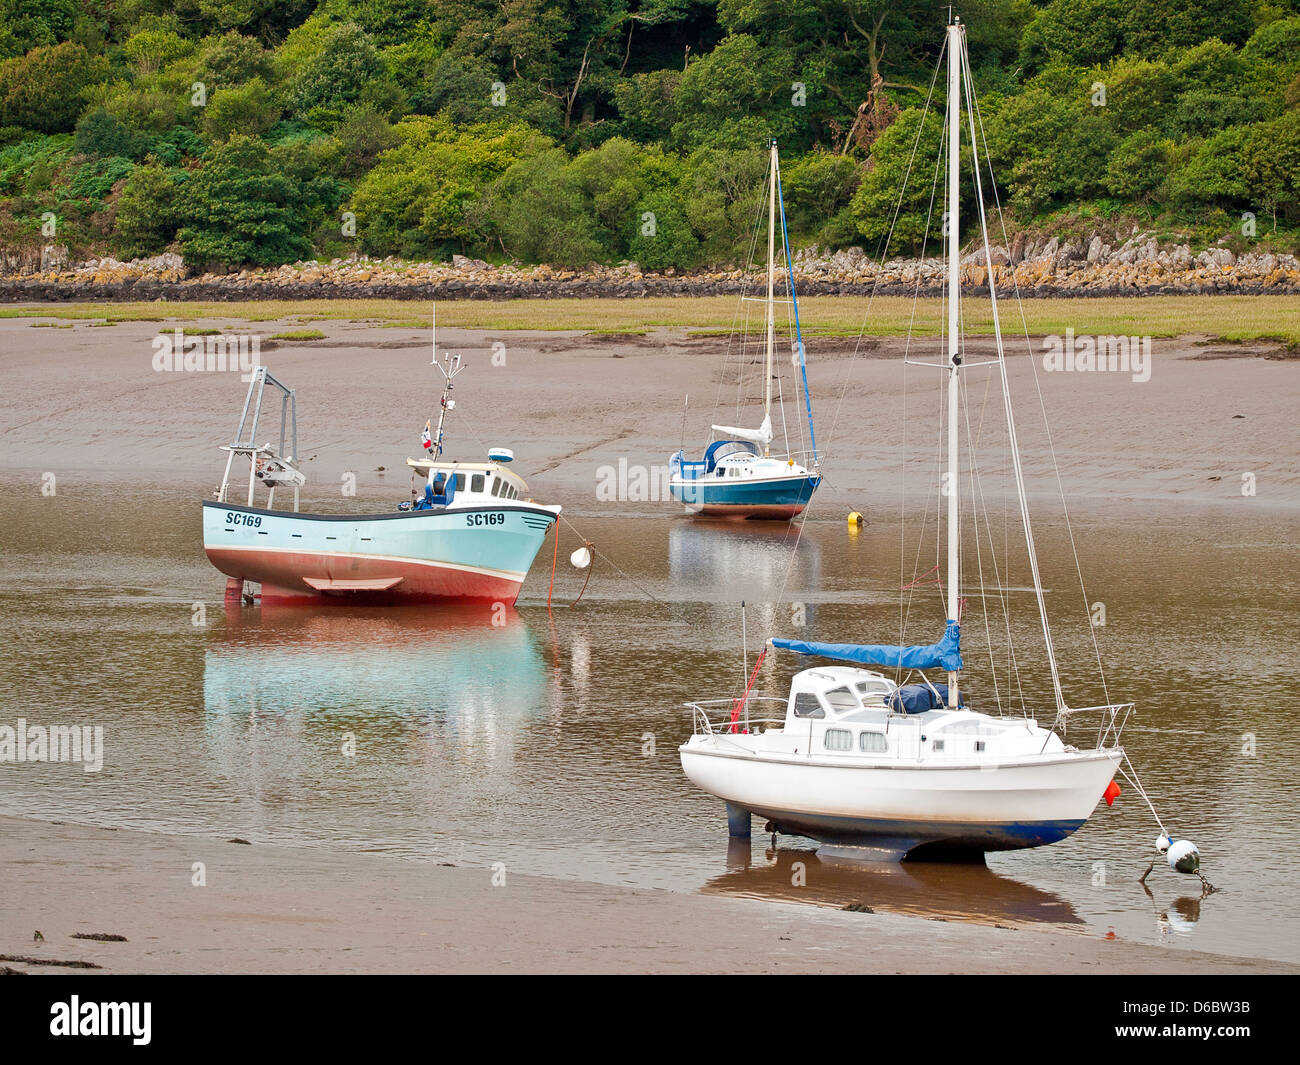 Sailing boats at Kippford, Dumfries and Galloway, Scotland Stock Photo